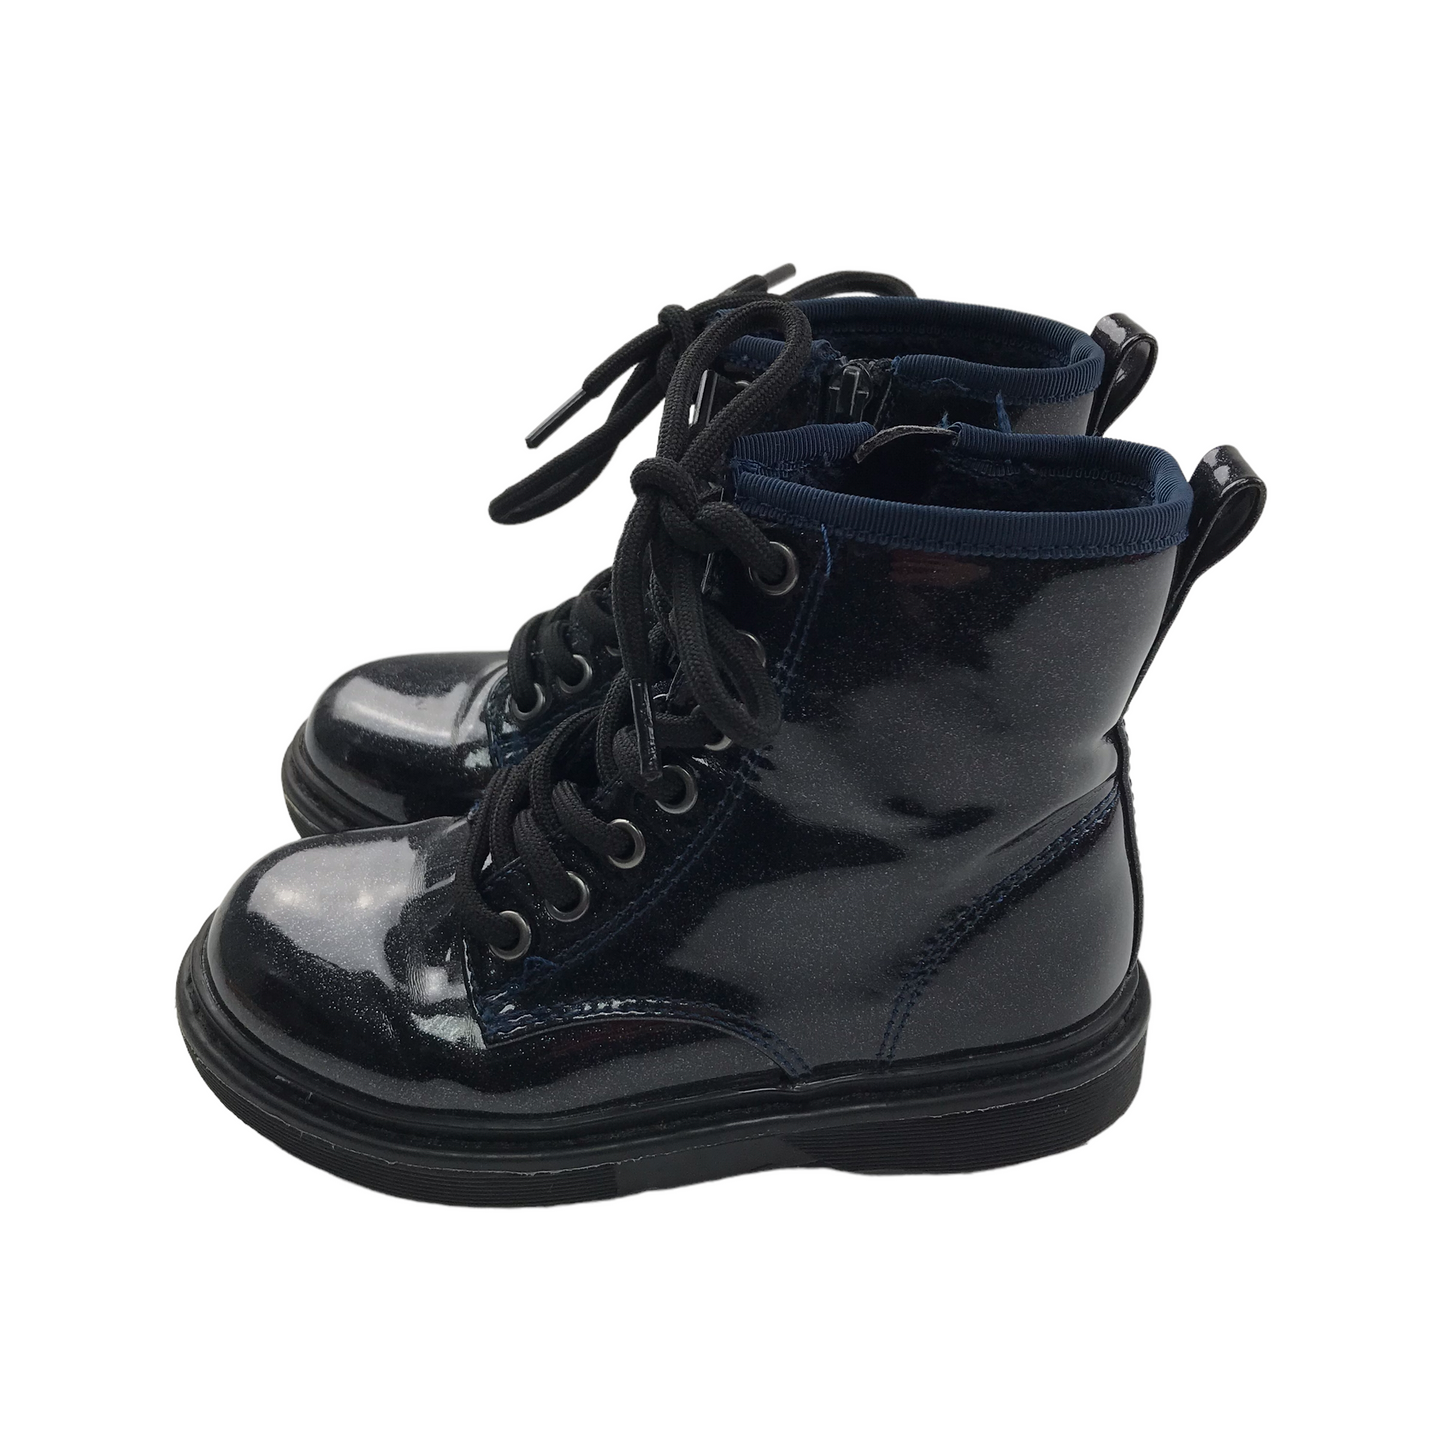 Next Shiny Black Combat Boots Shoe Size 9 junior